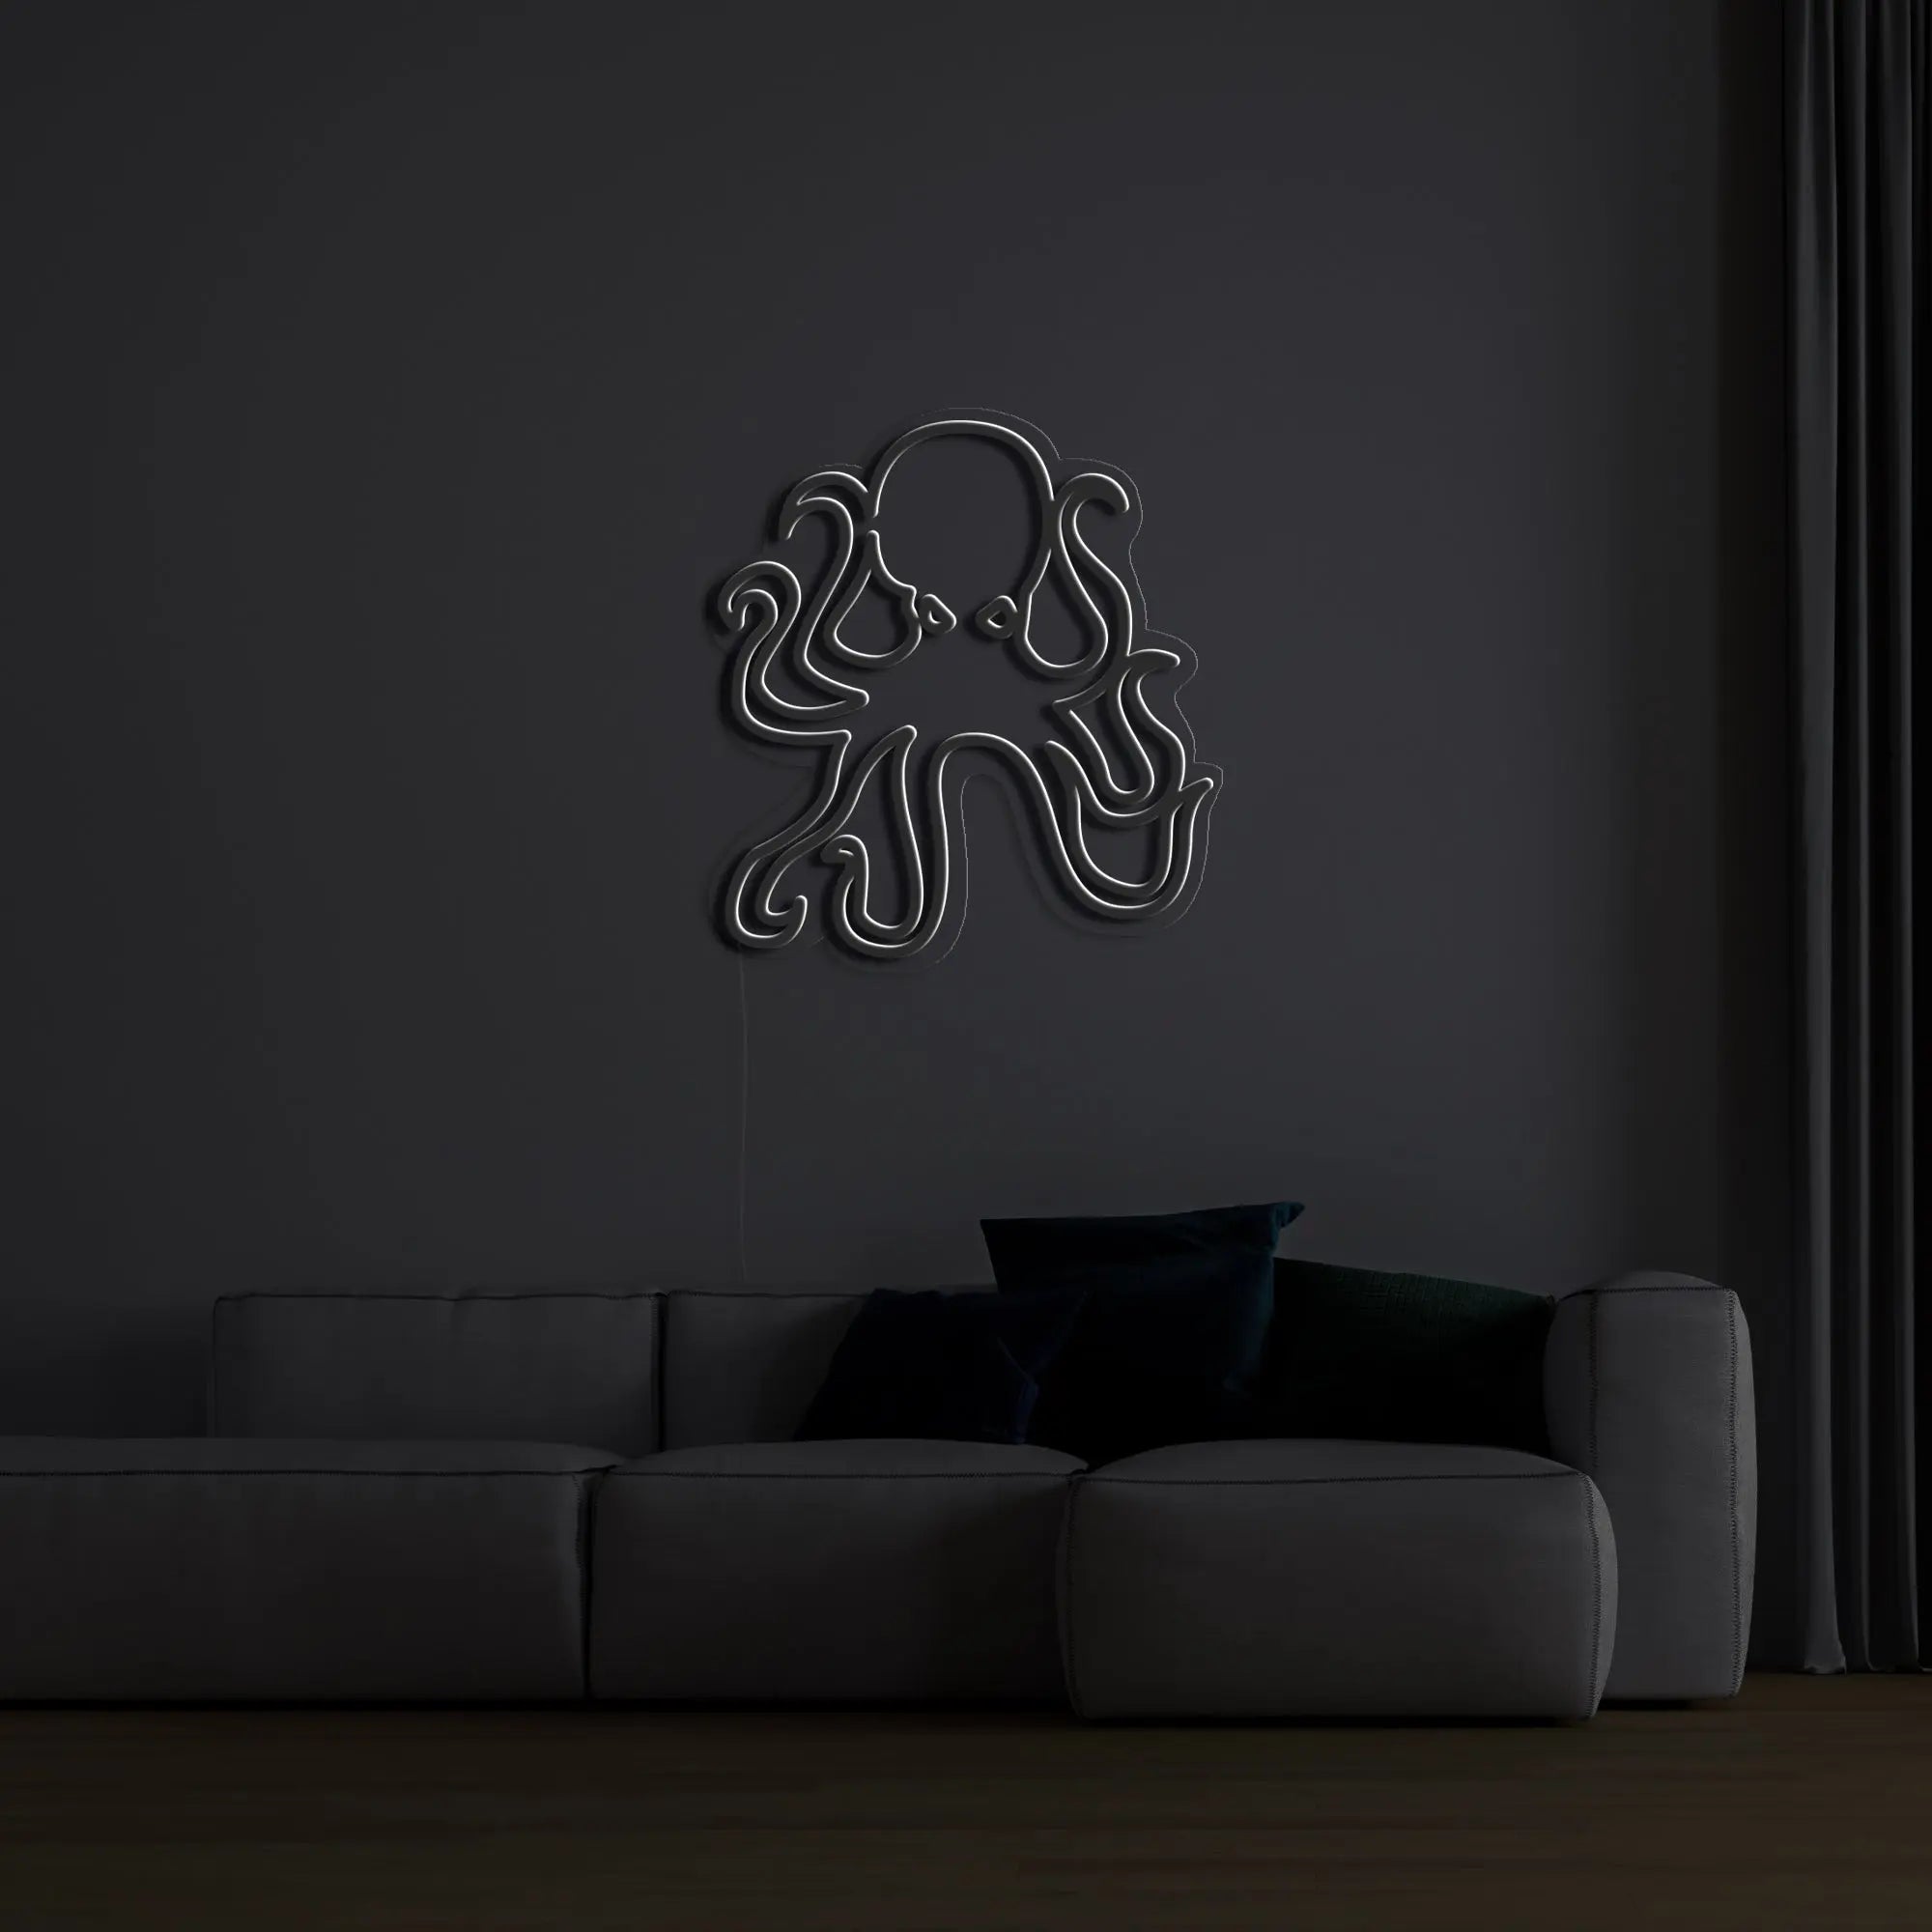 'Octopus' Neon Sign - neonaffair